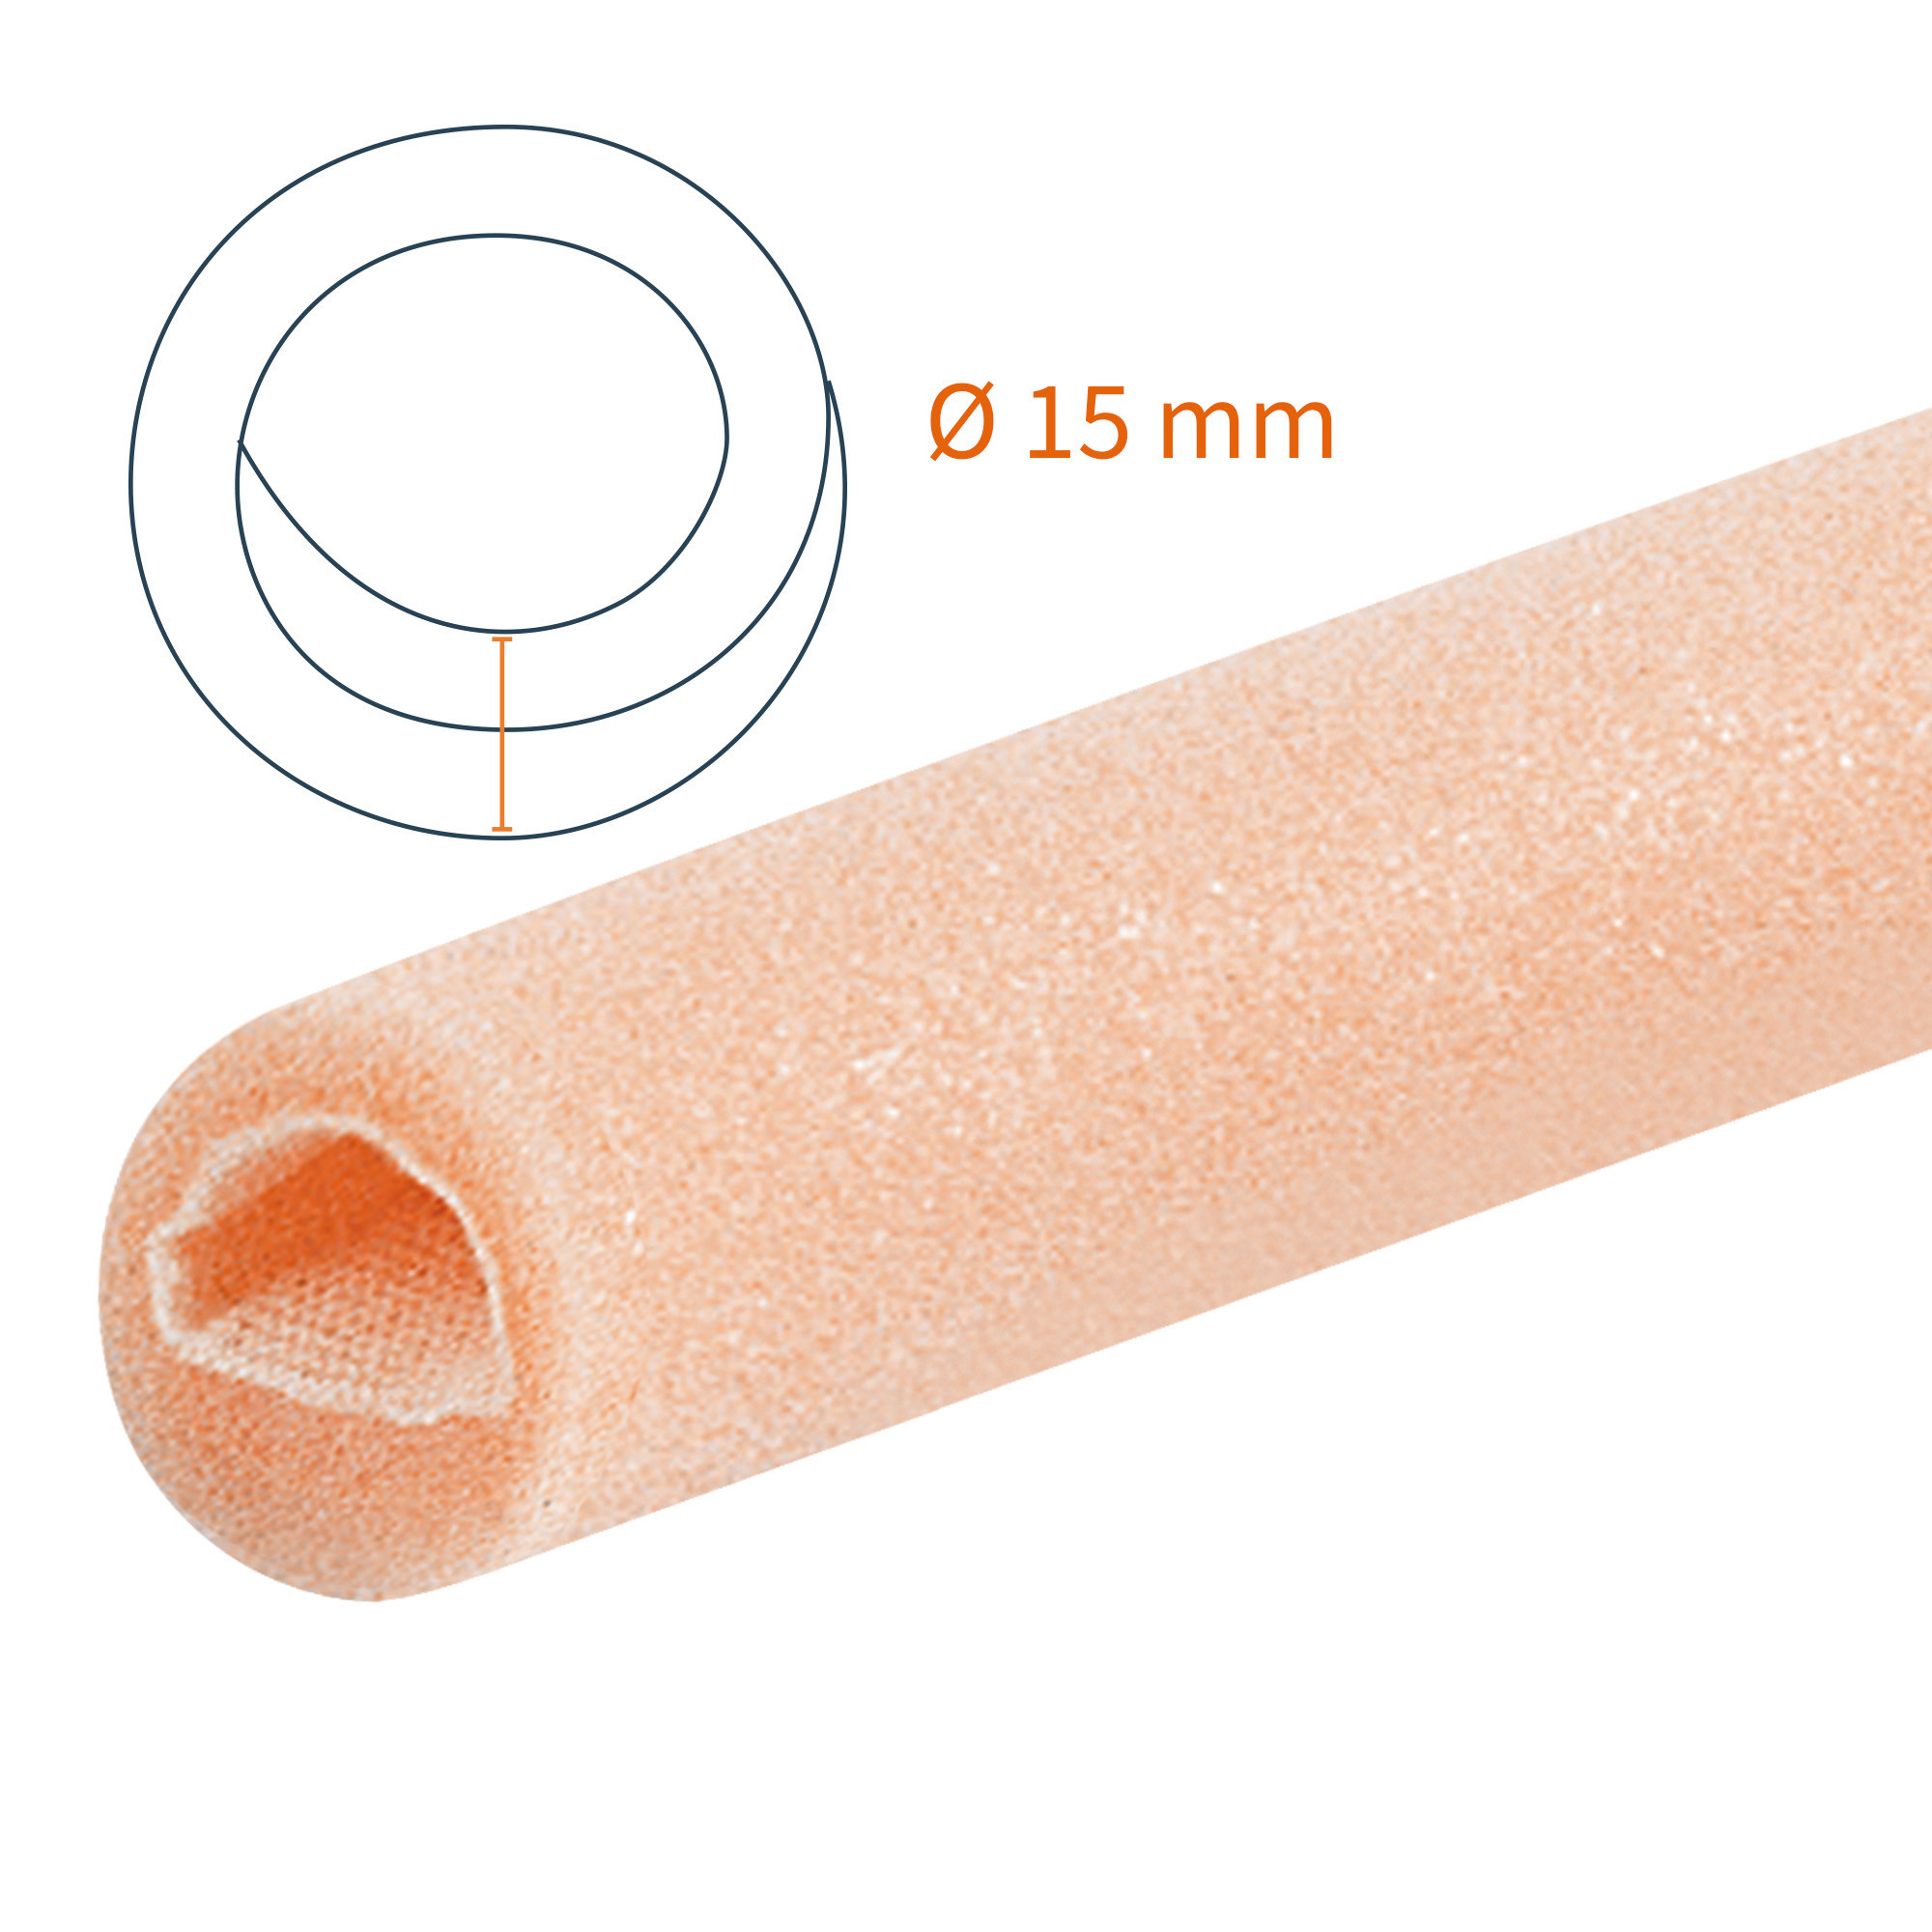 Tubifoam T-Foam Druckschutzschlauch doppelt 15 mm AX 12 Stück